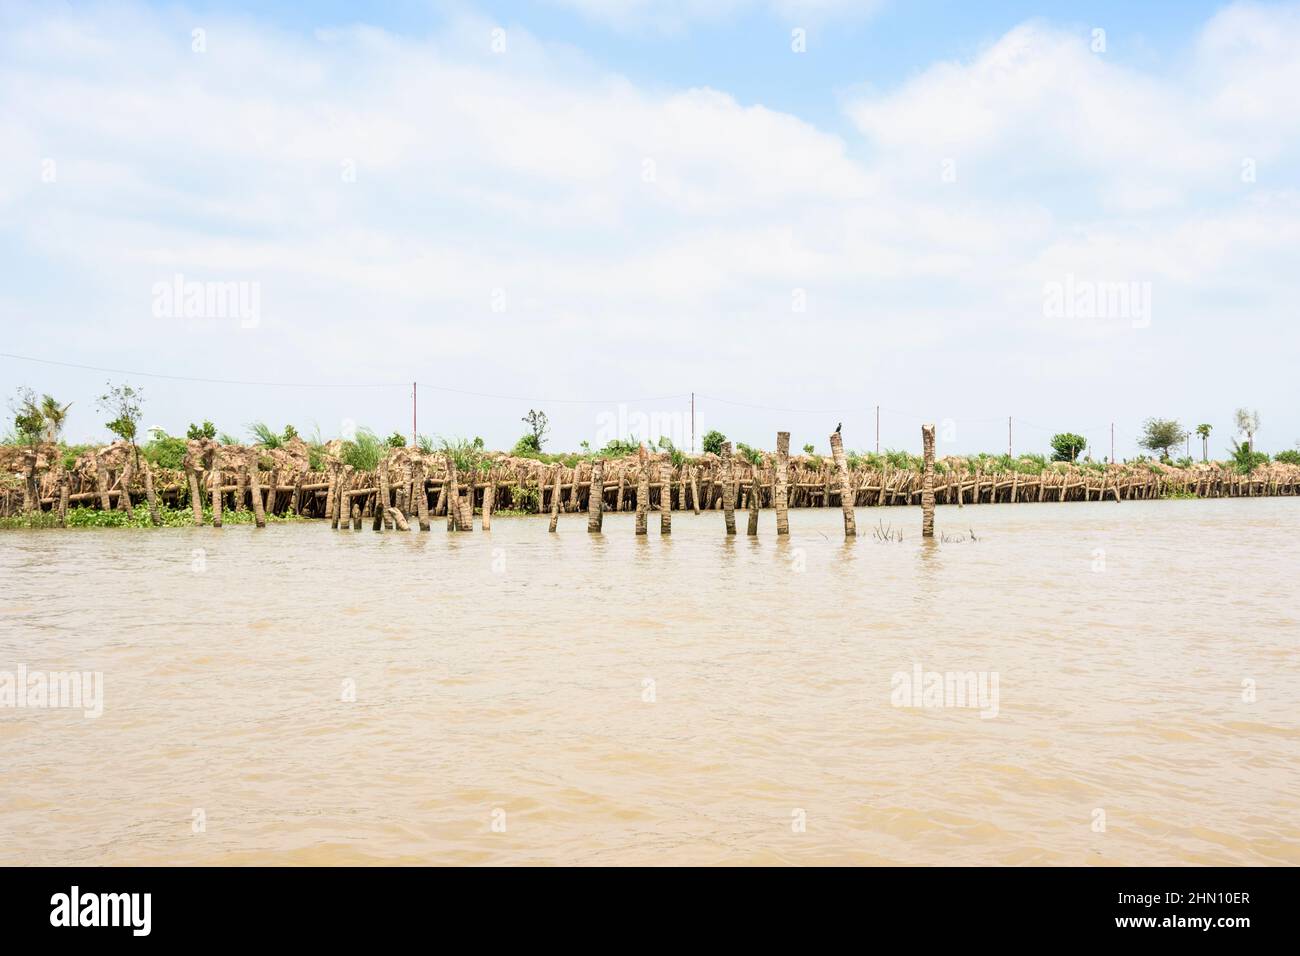 Las orillas del río están reforzadas con barreras de madera para controlar la erosión en el río Mekong, el delta del Mekong, la provincia de Vinh Long, Vietnam del Sur Foto de stock